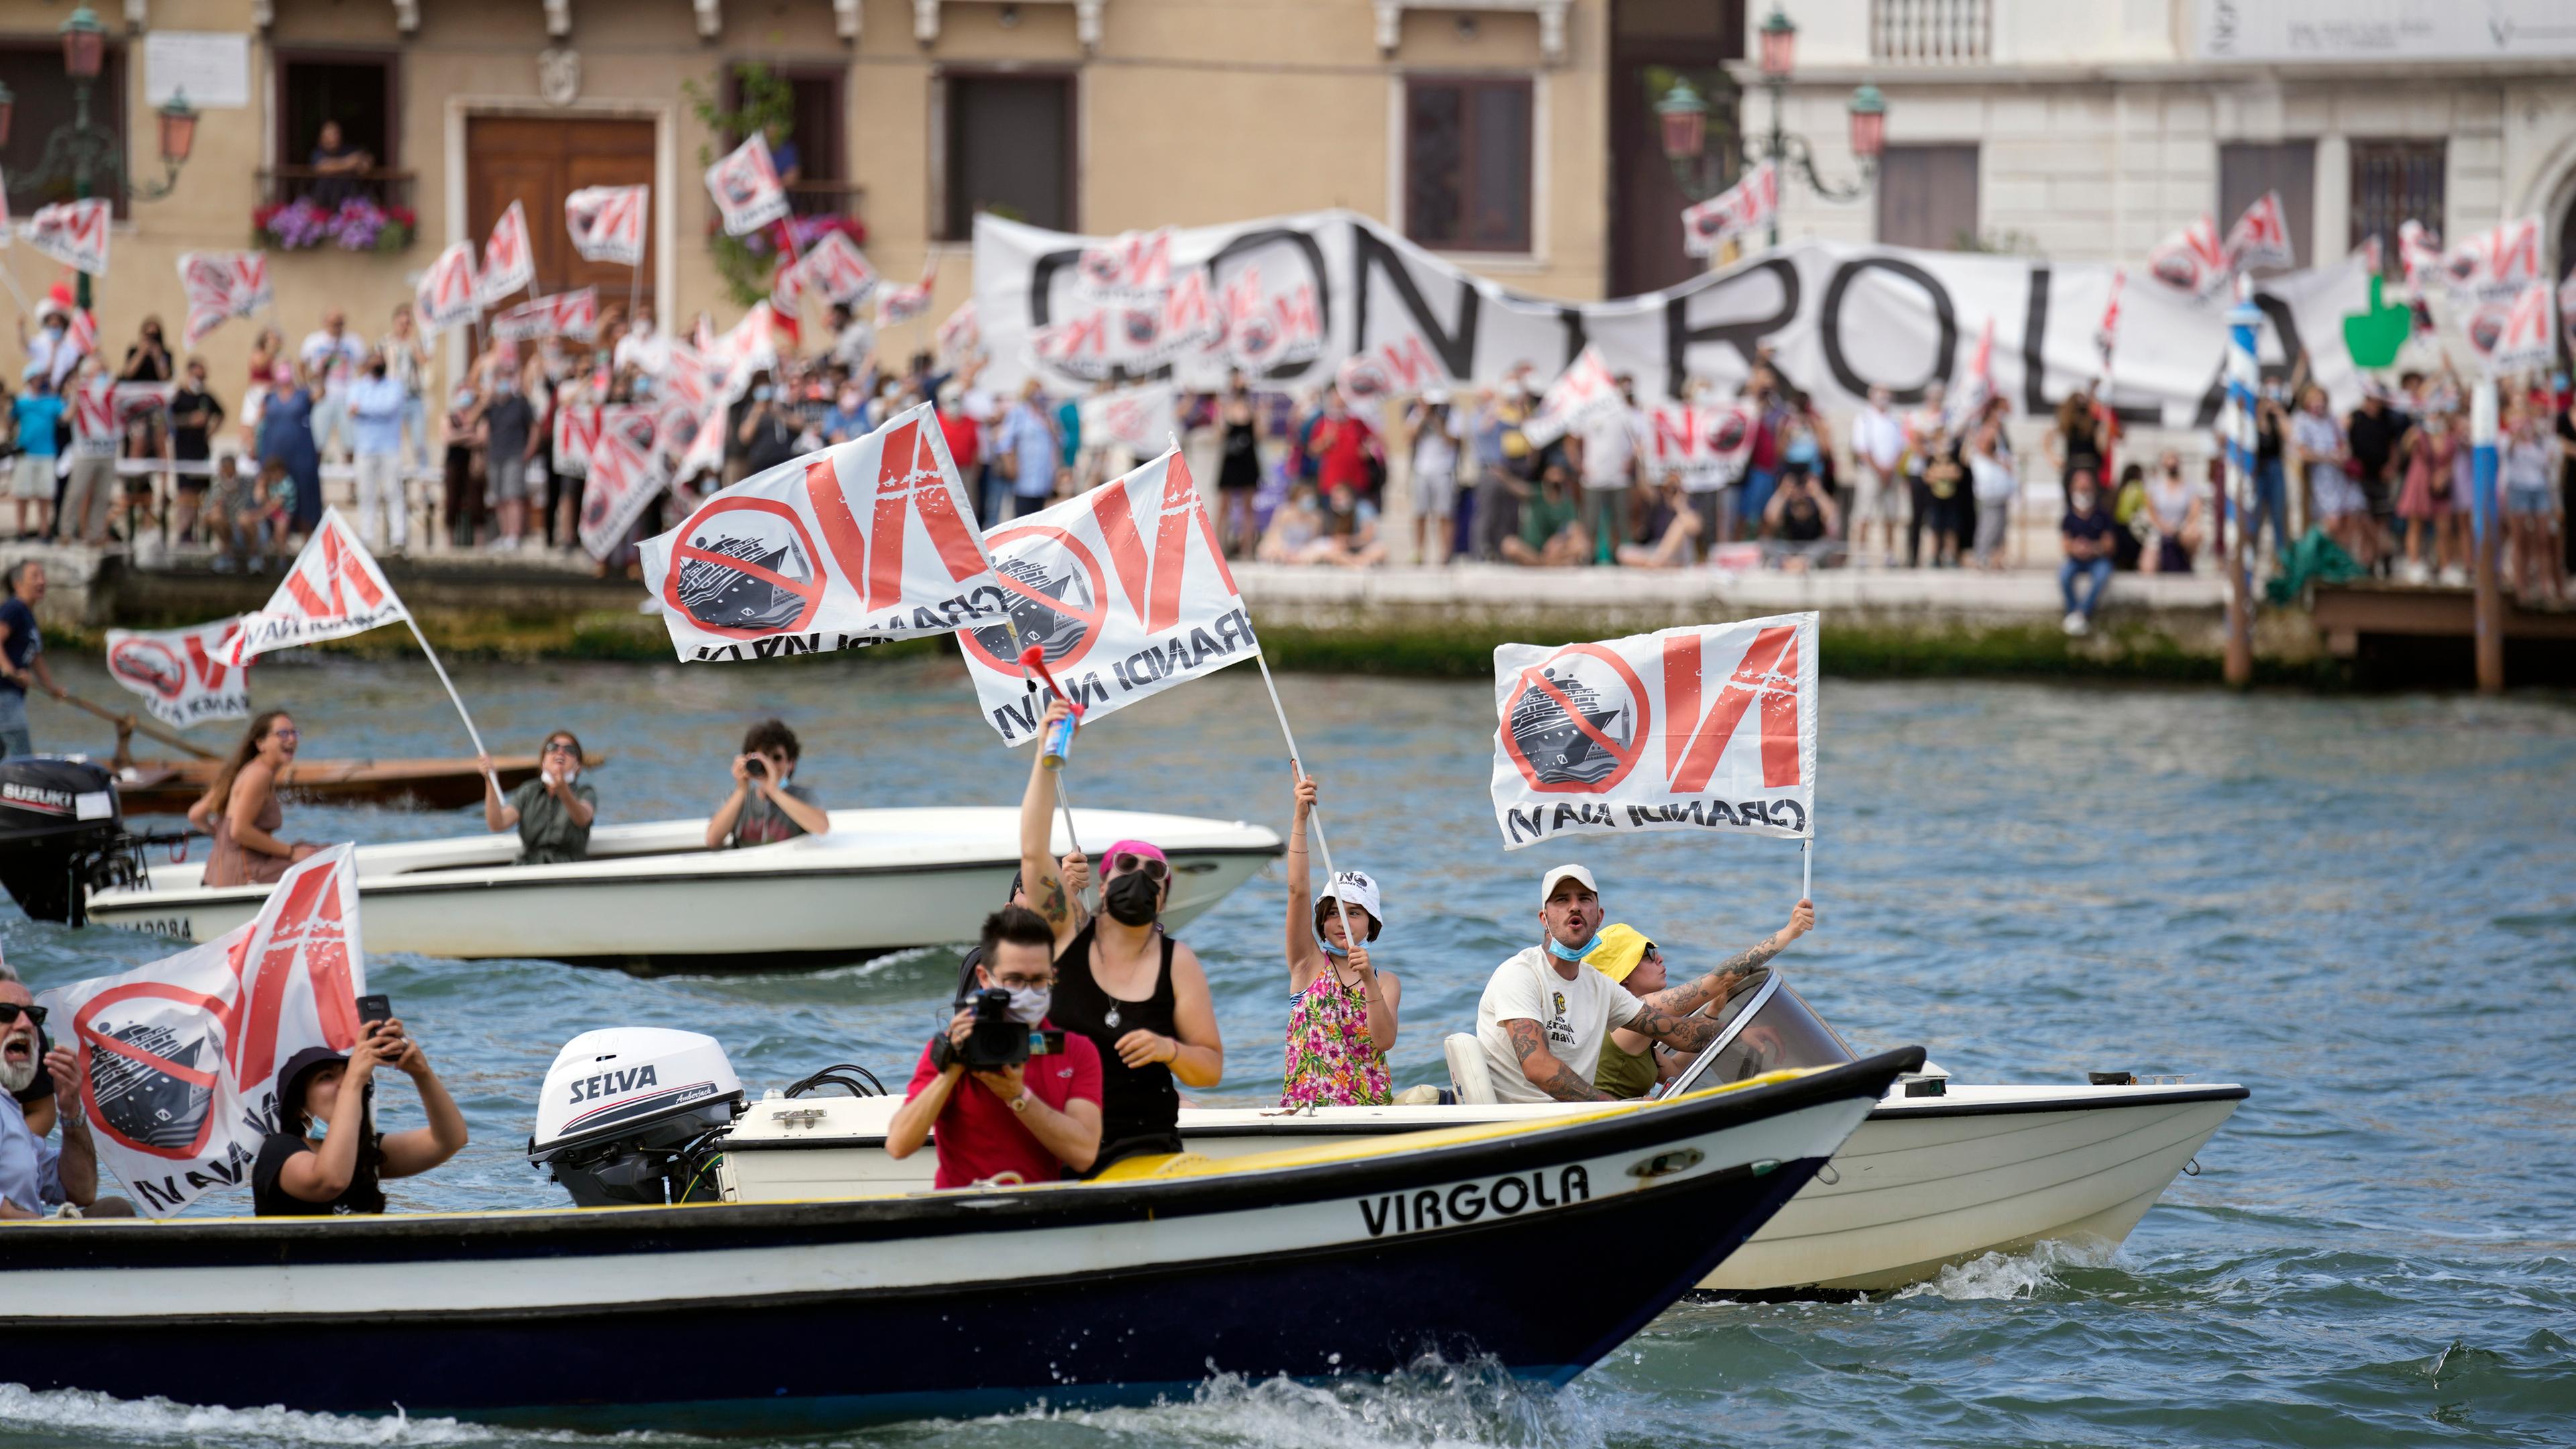 Menschen am Ufer und auf Booten protestieren mit Bannern und Fahnen